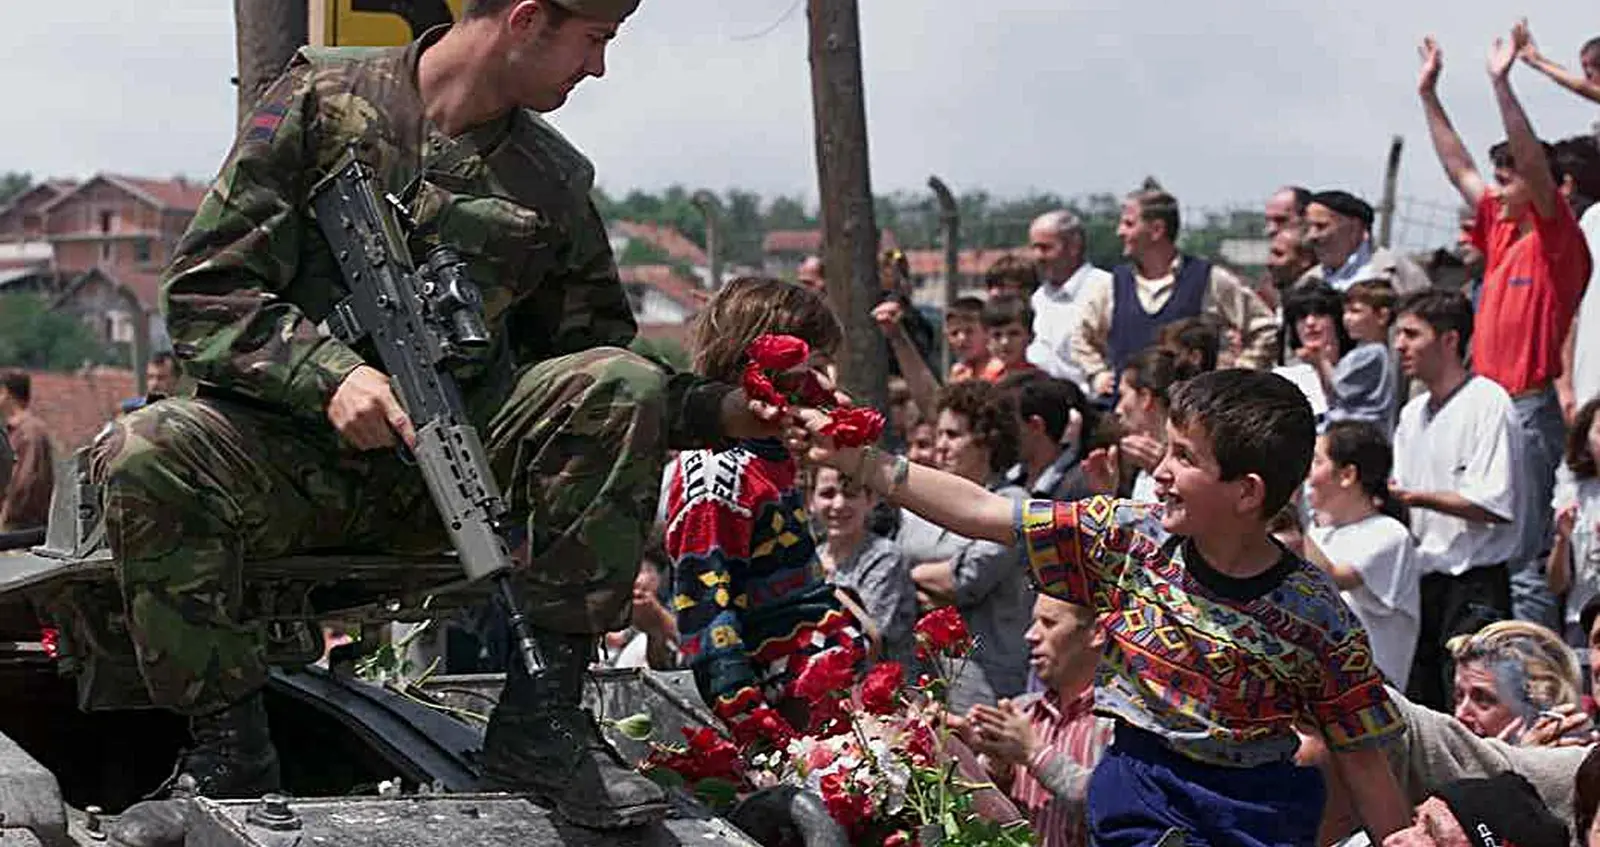 Joy - War on Conf1ict - Kosovo - 51978073 - 52450